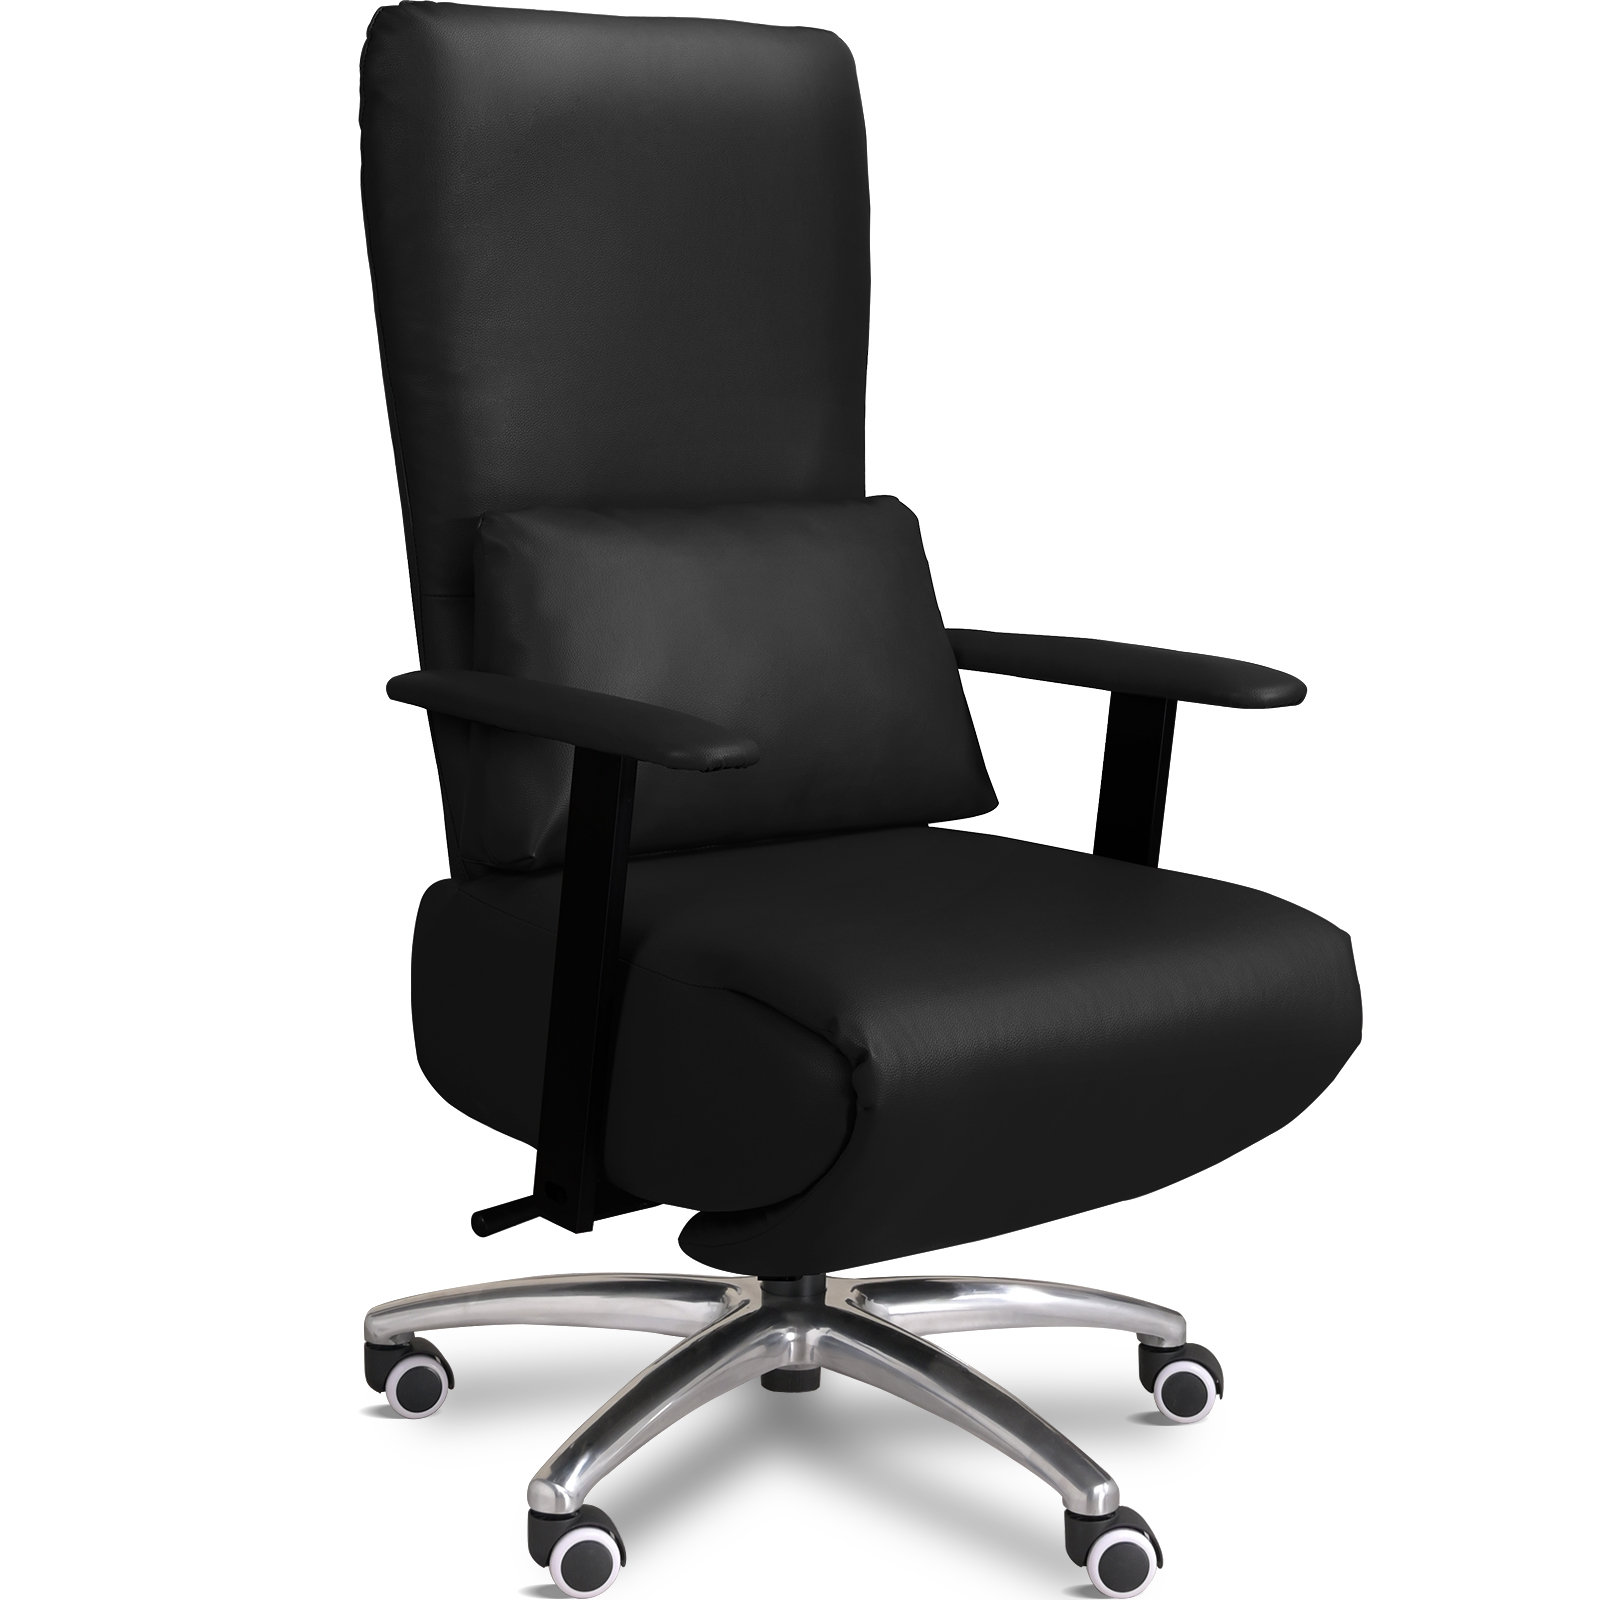 https://assets.wfcdn.com/im/88569518/compr-r85/2401/240153010/koya-executive-chair-with-headrest.jpg